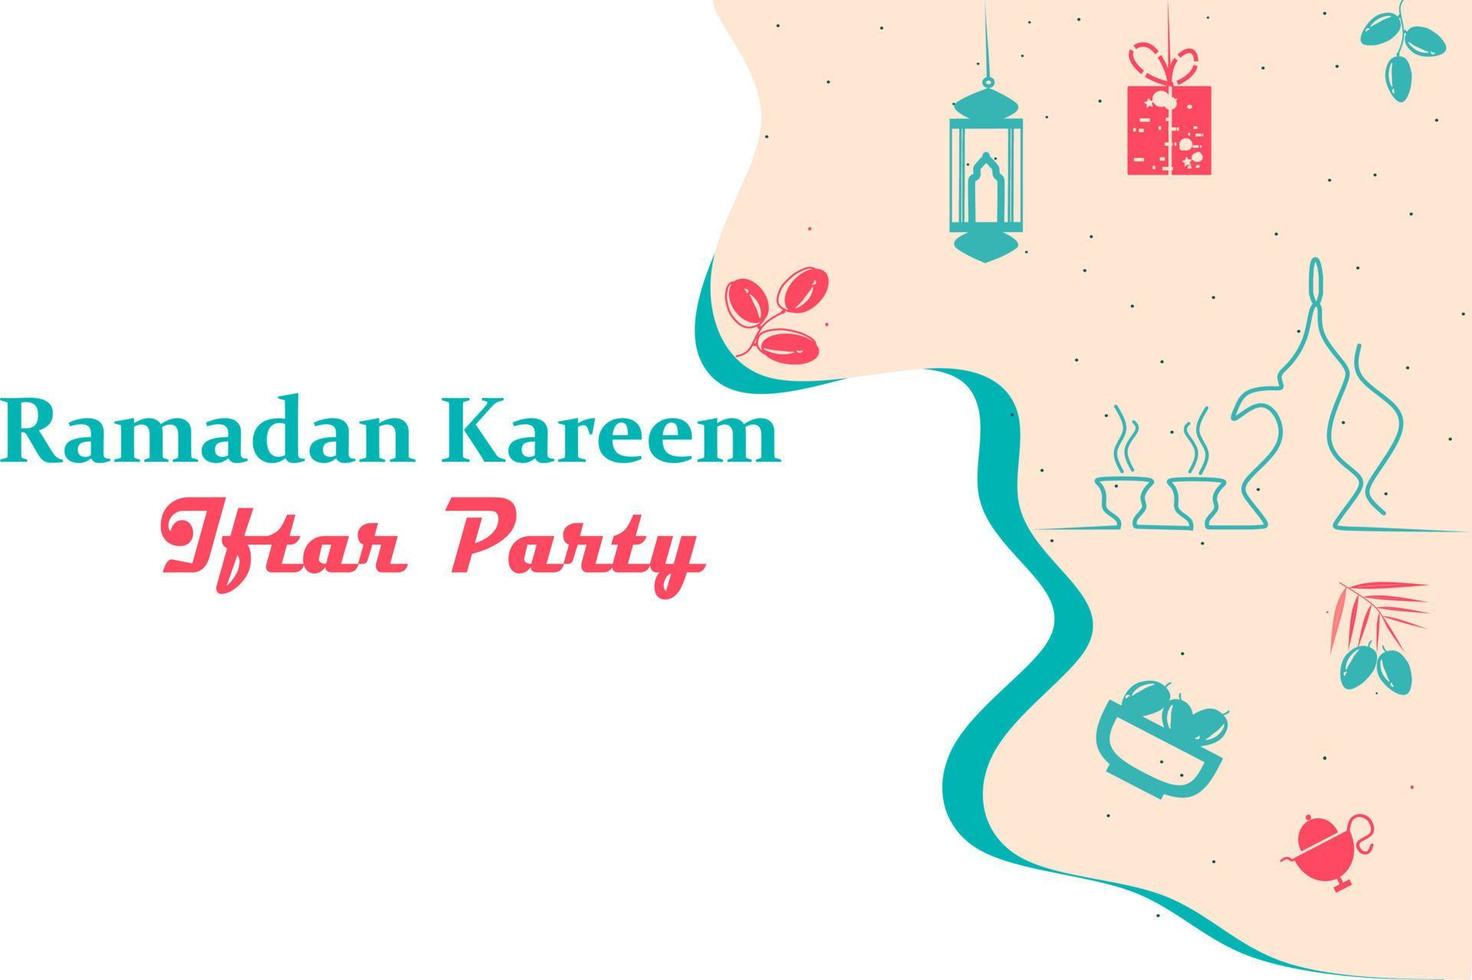 felice tema festa ramadan kareem iftar. può essere utilizzato per sfondo, poster, flyer, infografica, presentazione, progettazione di modelli di layout. concetto di icone islamiche nel vettore piatto moderno.